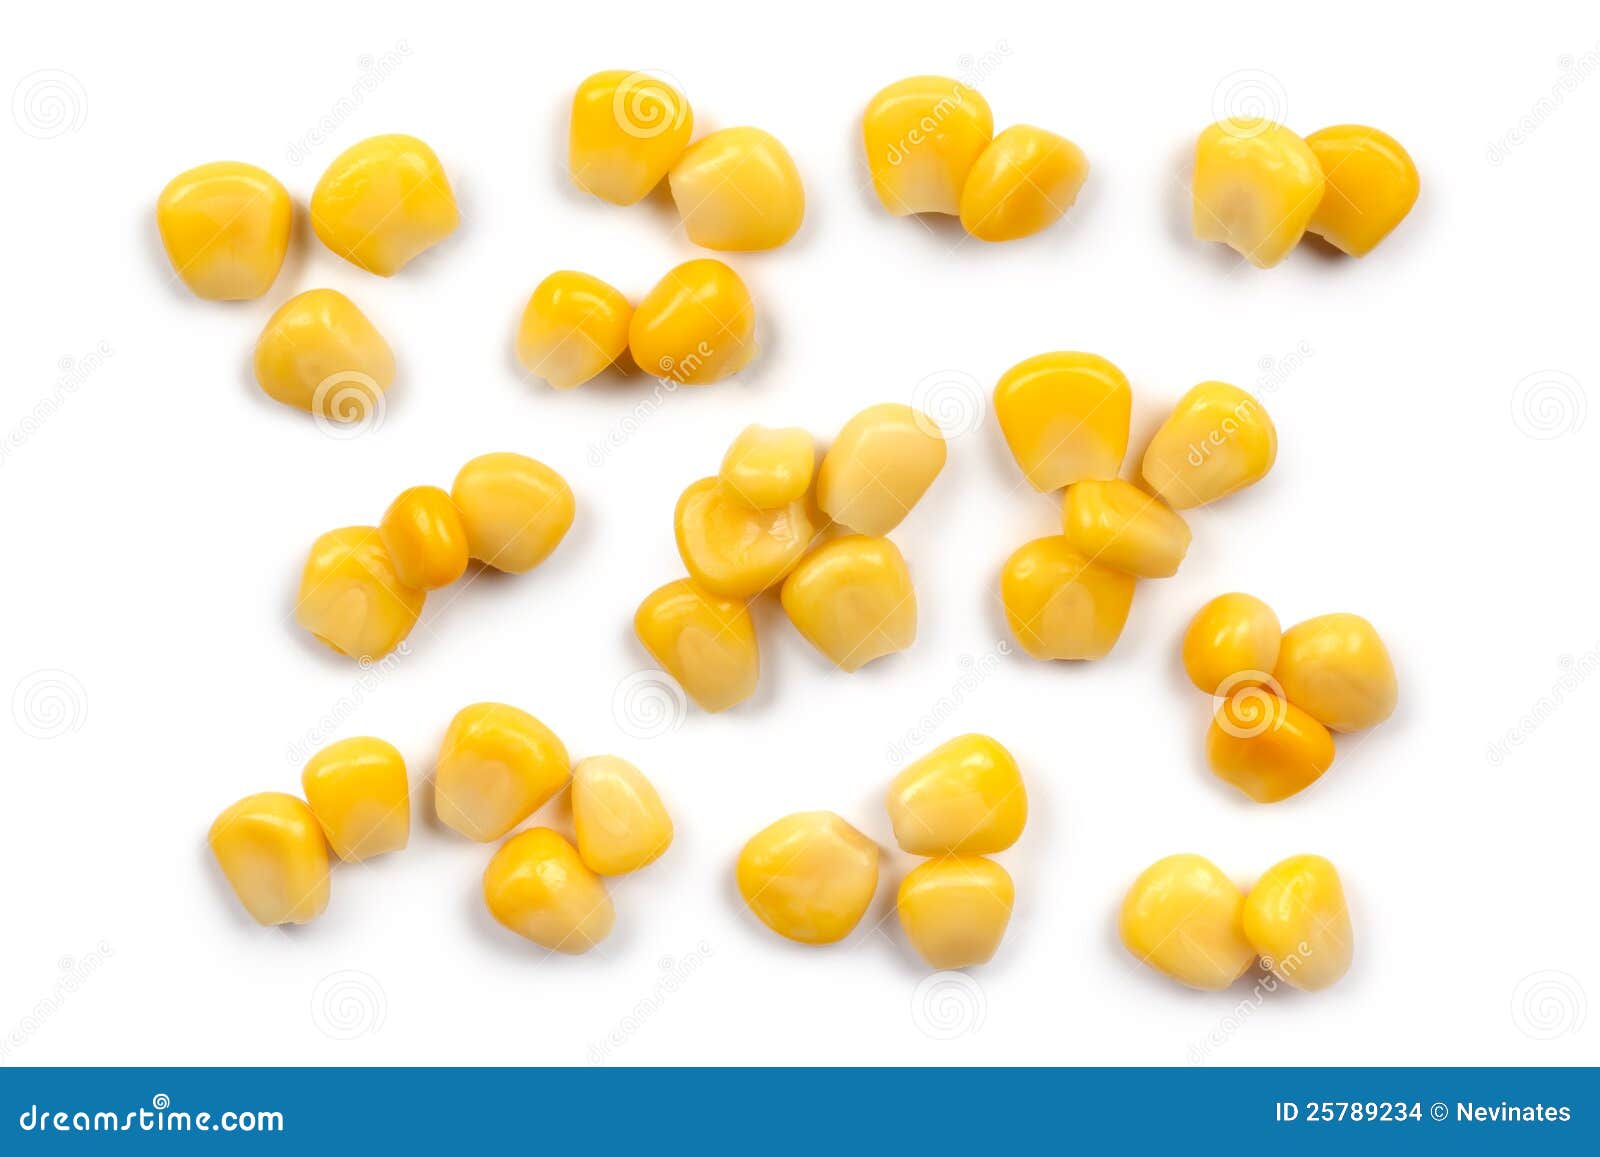 sweetcorn kernels